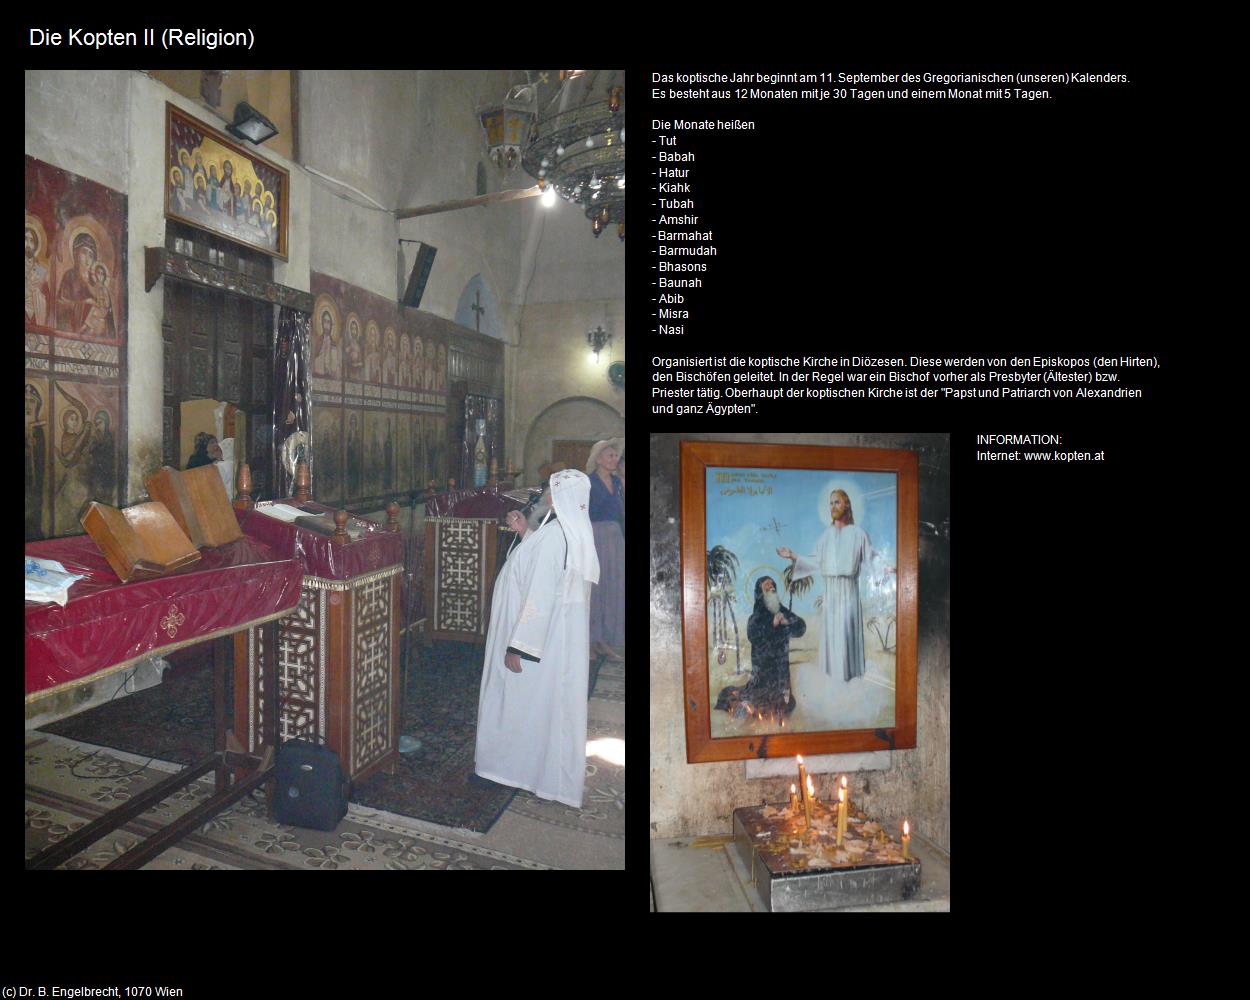 Die Kopten II - der koptische Kalender (+Die Koptische Kirche) in Kulturatlas-ÄGYPTEN